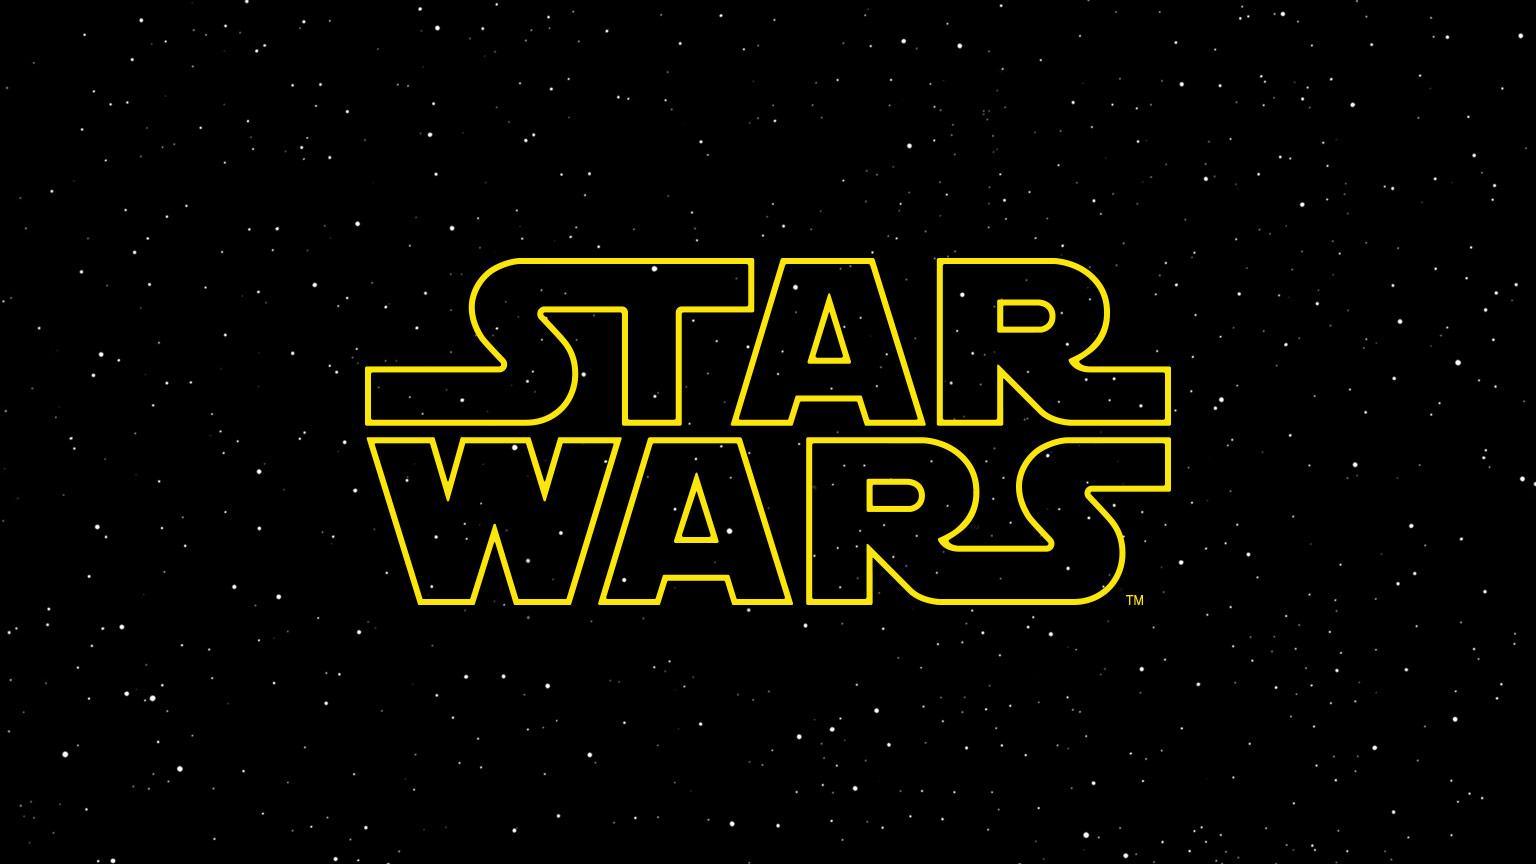 Star-wars-logo-new-tall